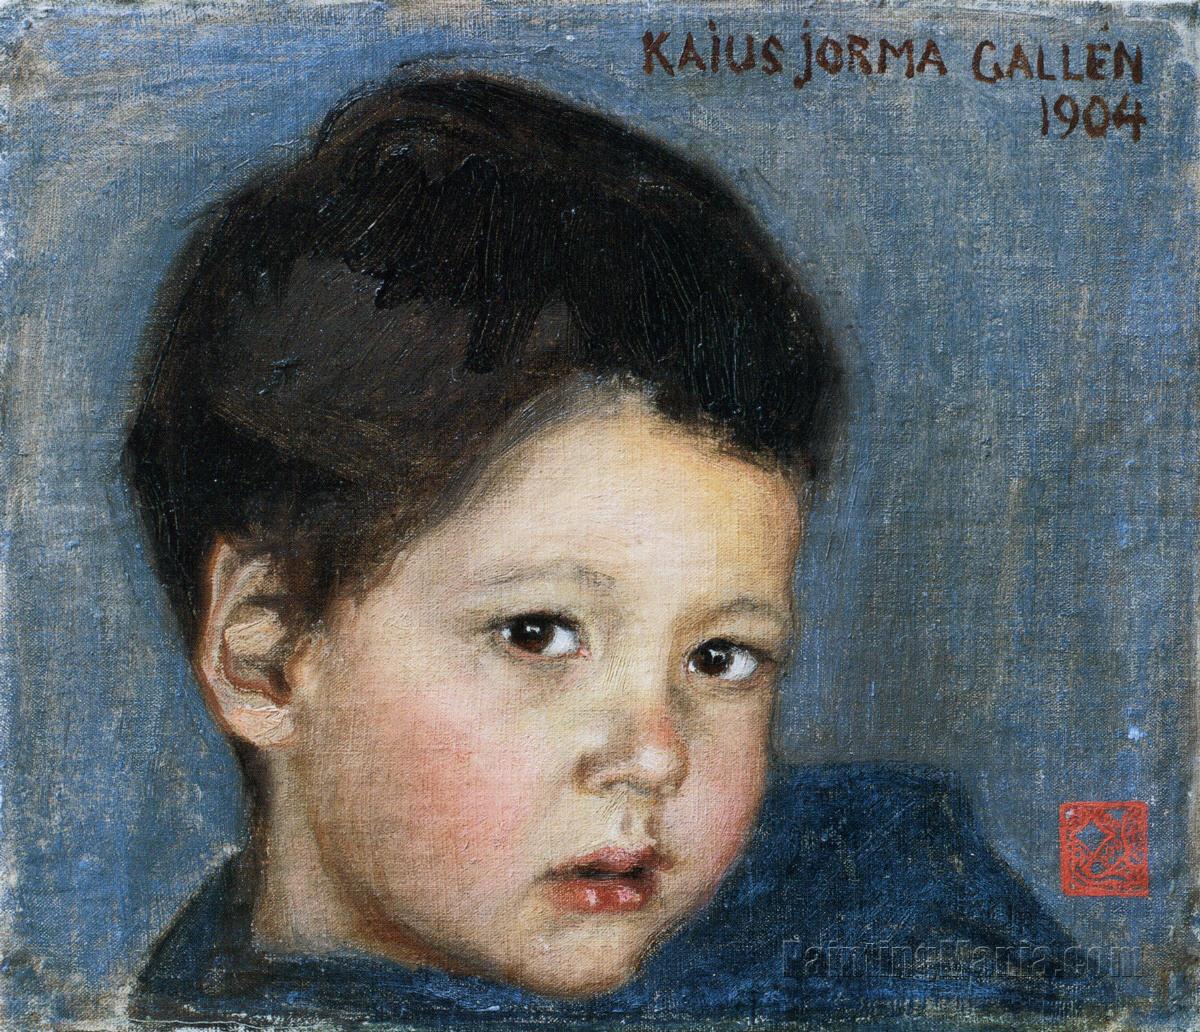 Portrait of Kaius Jorma Gallen